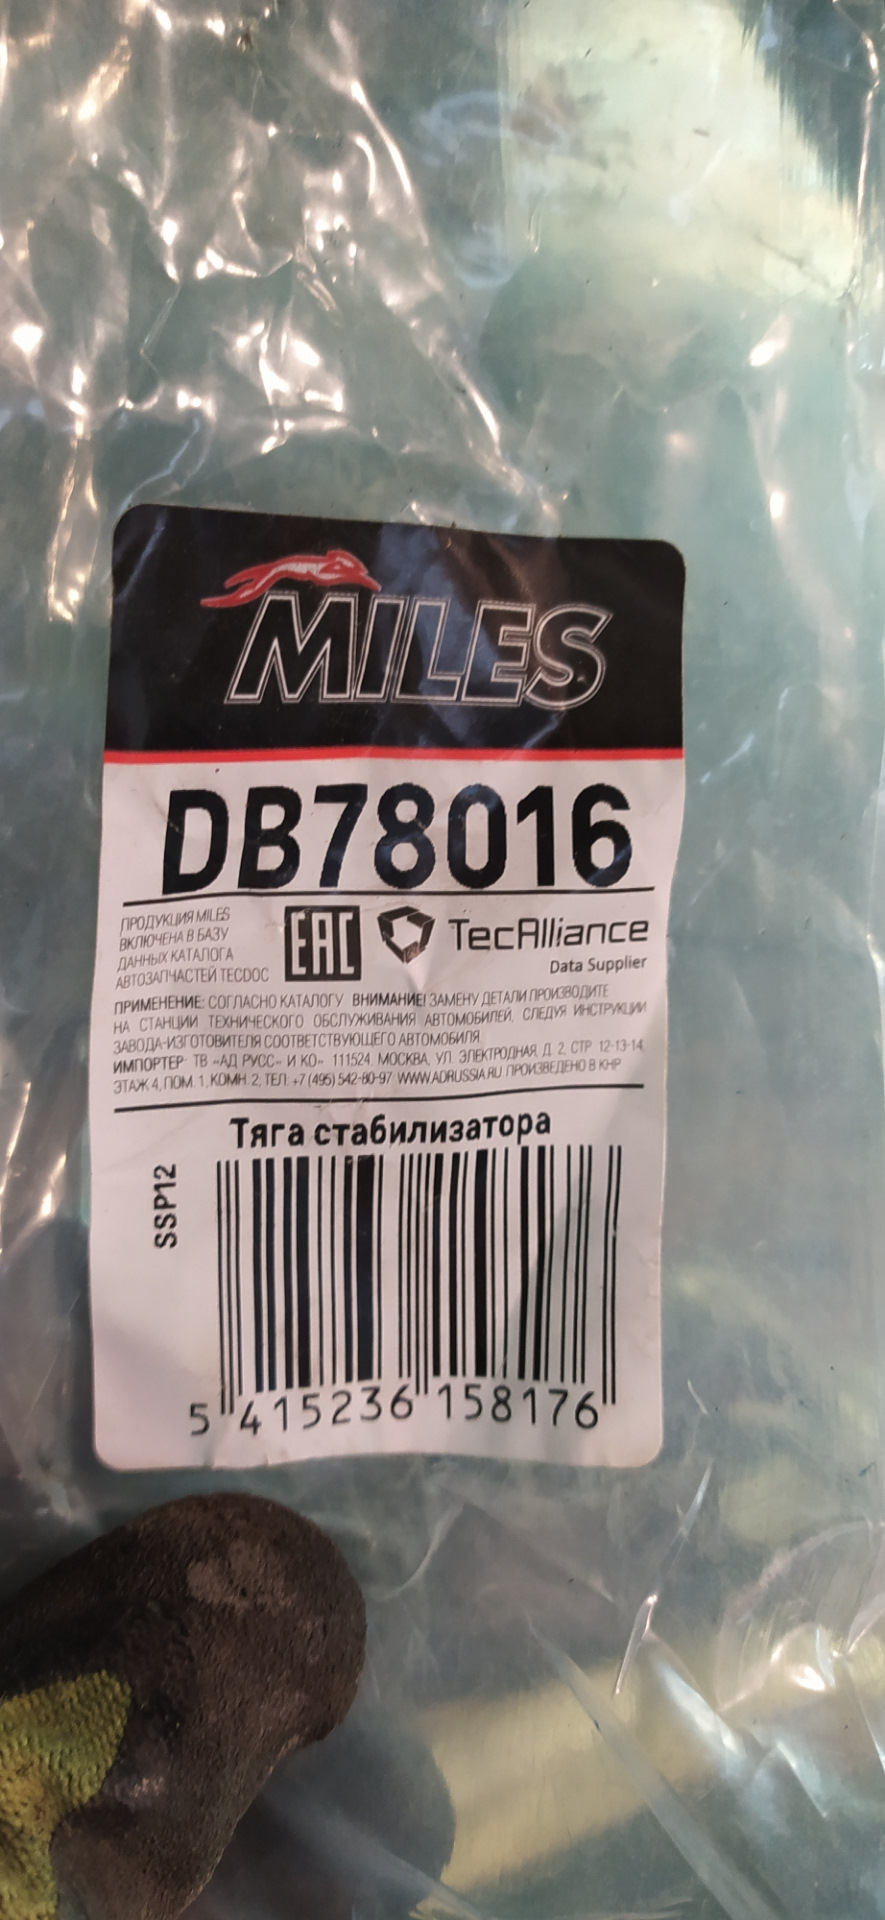 Производитель miles отзывы. Miles db78016.